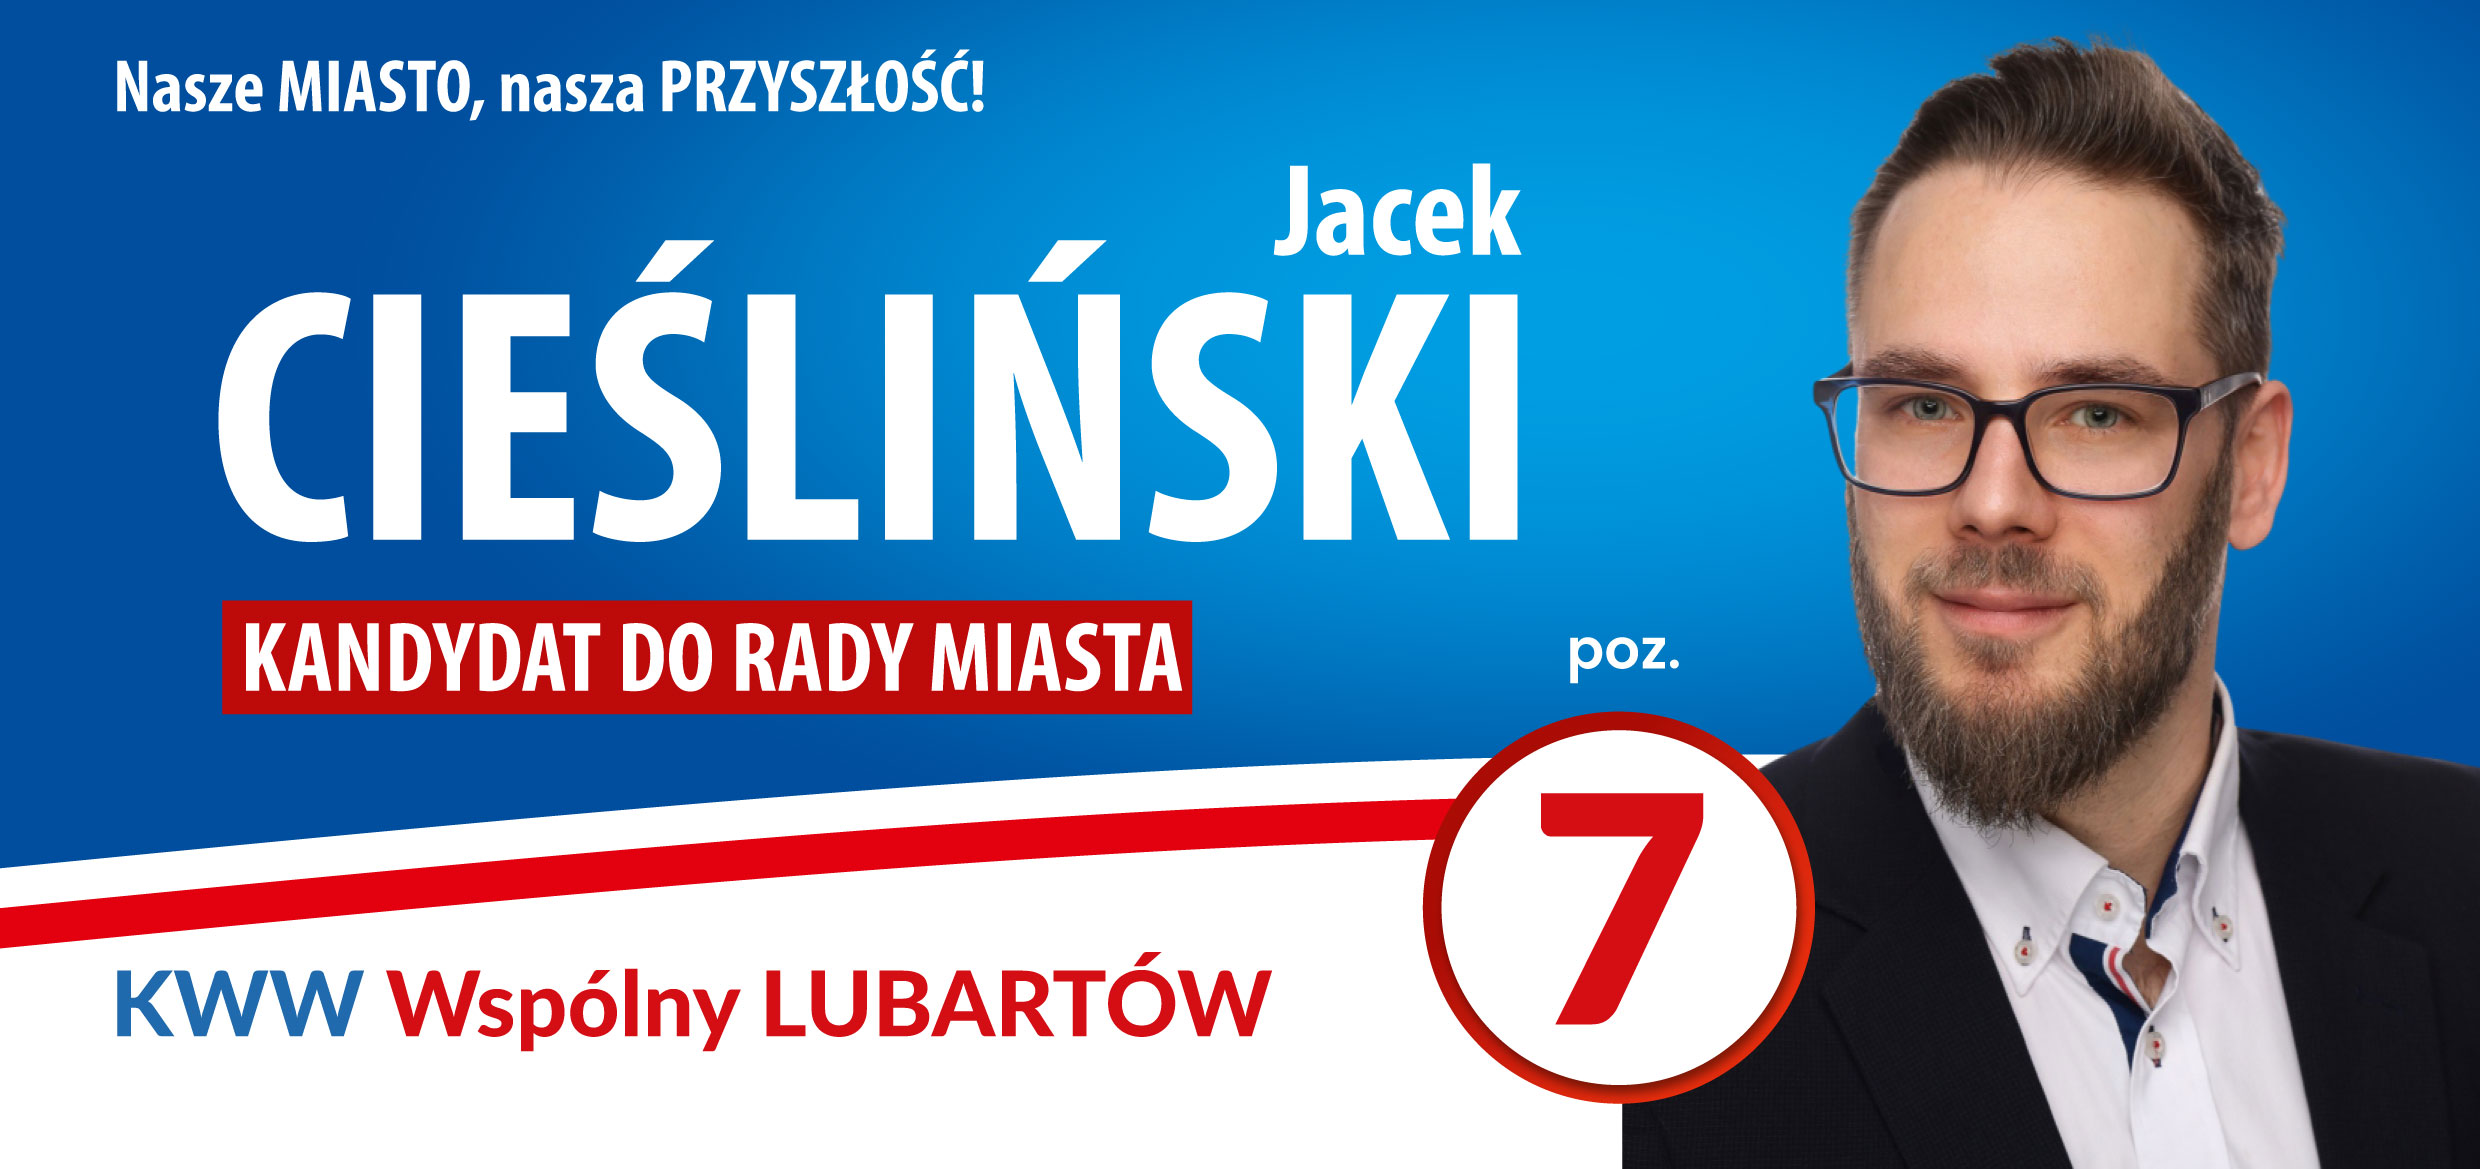 Cieśliński_Jacek-1